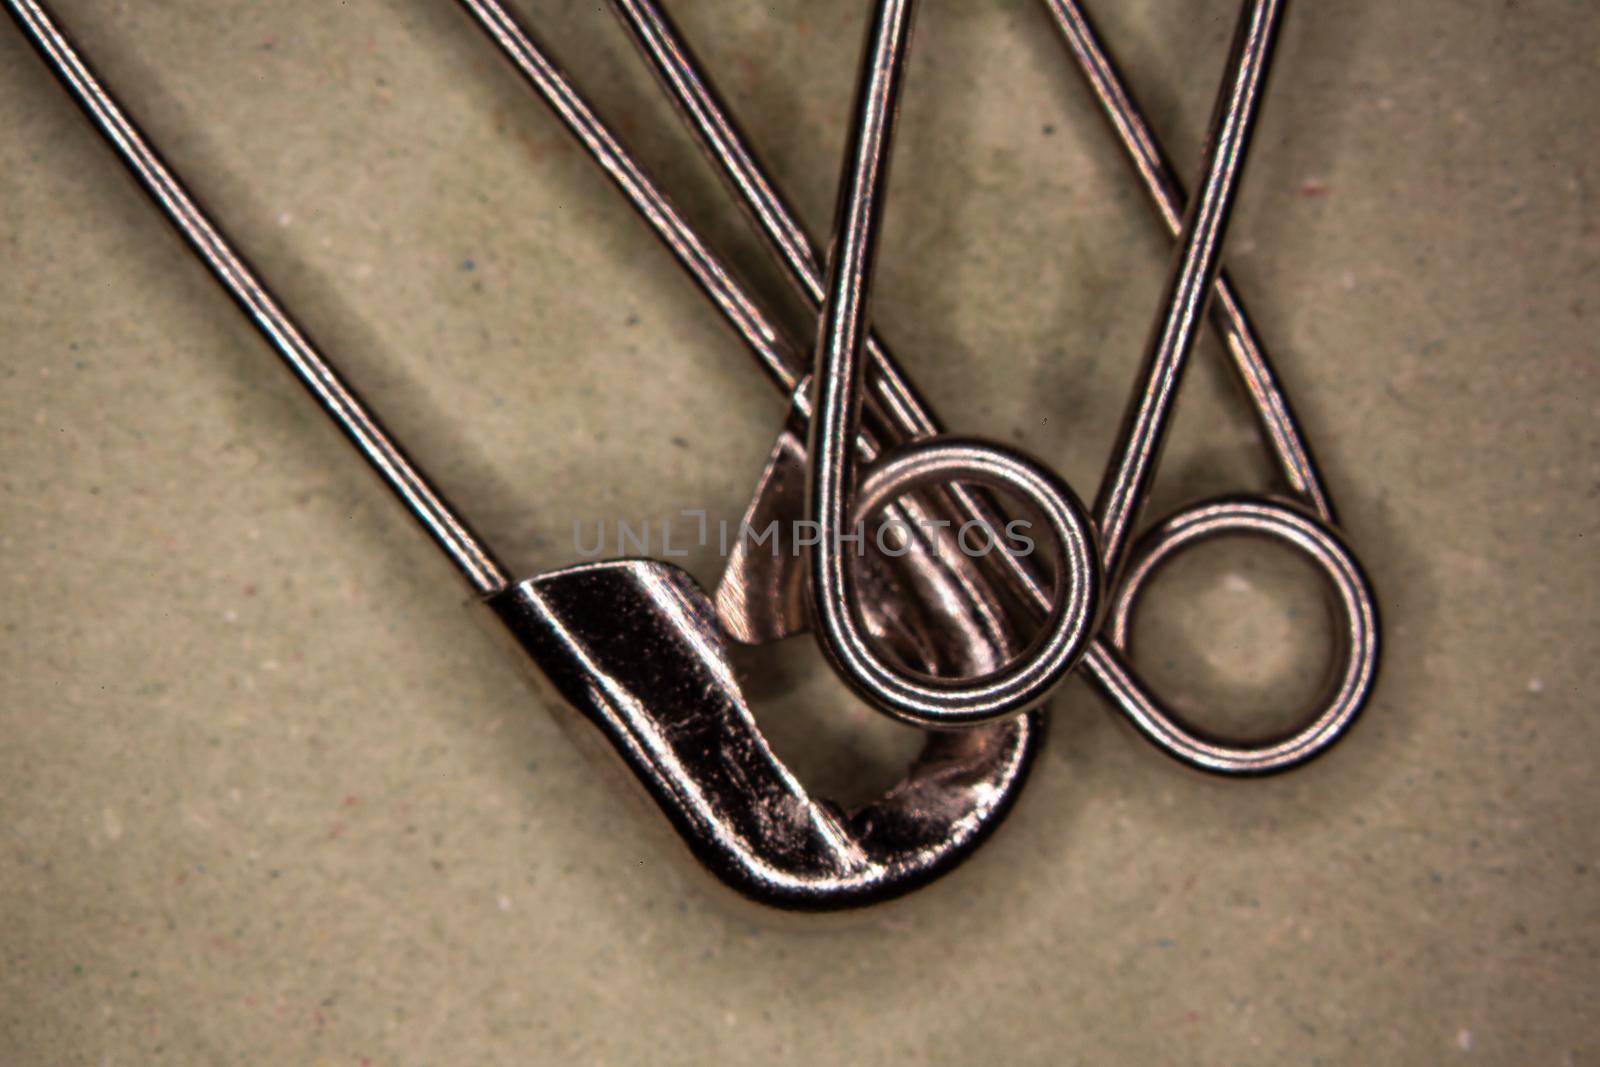 metallic safety pins by Dr-Lange